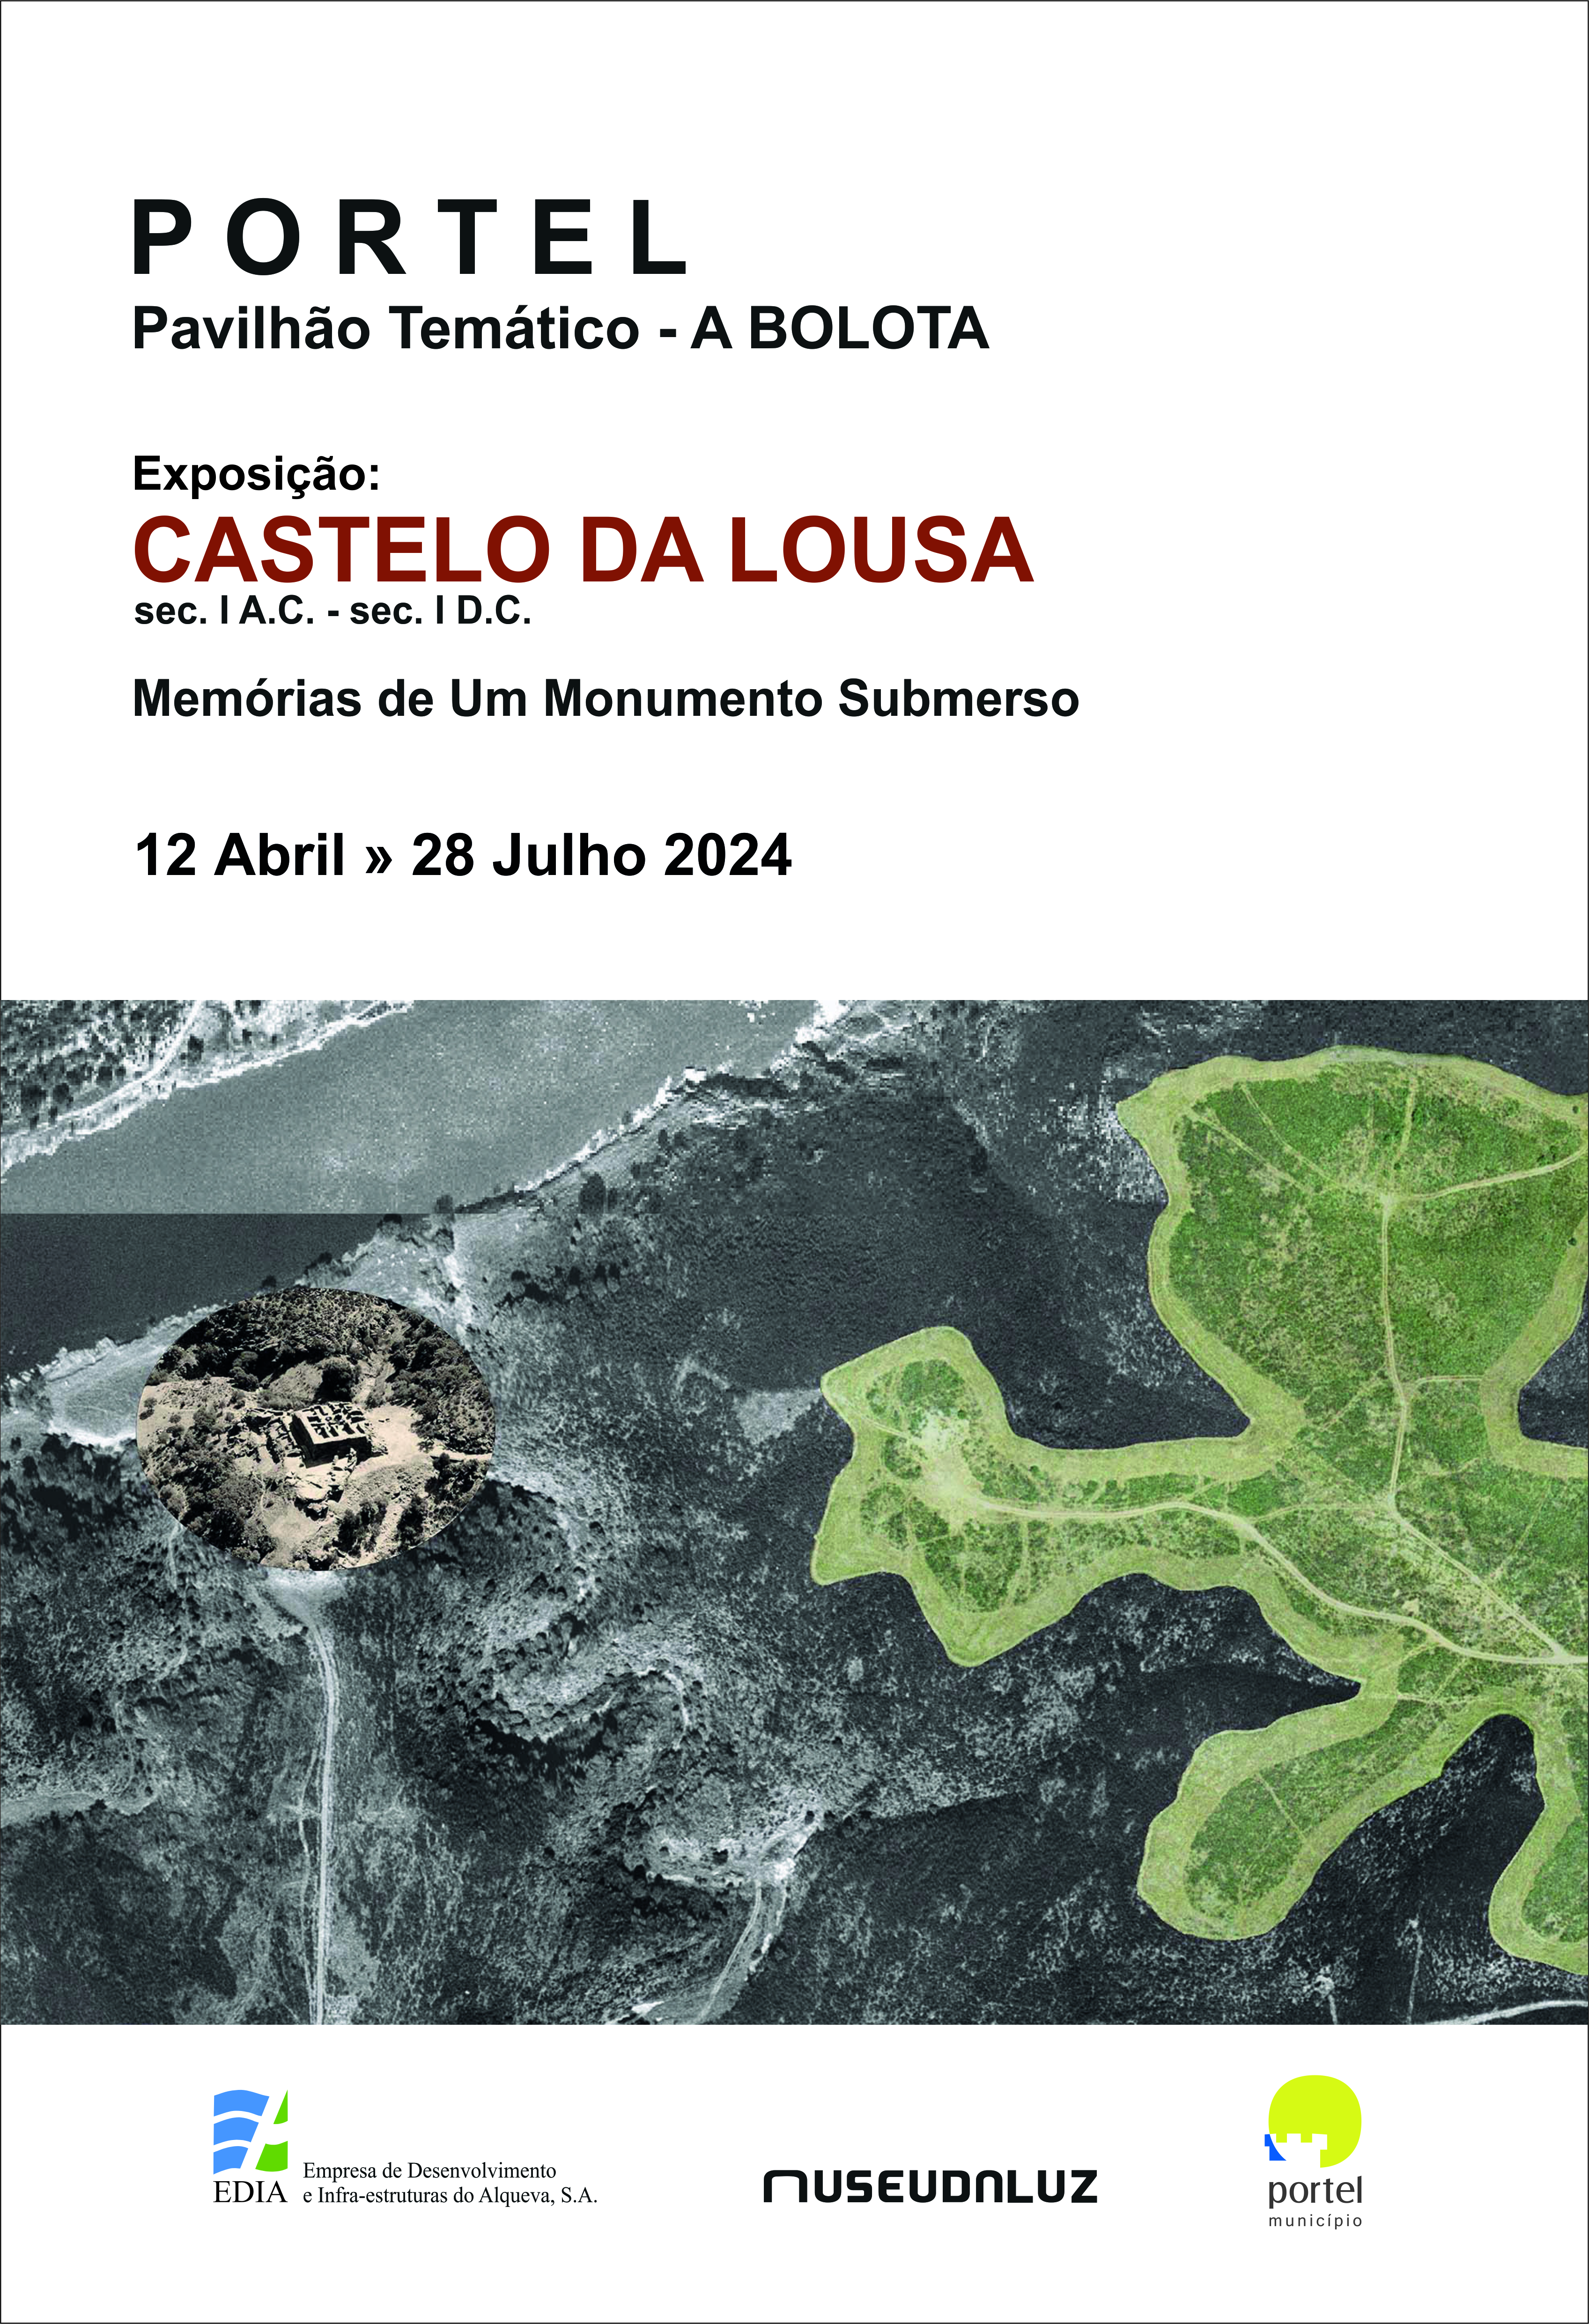 Castelo da Lousa: Memórias de um Monumento Submerso – Parceria Museu da Luz/EDIA/CM Portel – Pavilhão temático A BOLOTA (Portel) de 12 abril a 28 julho 2024